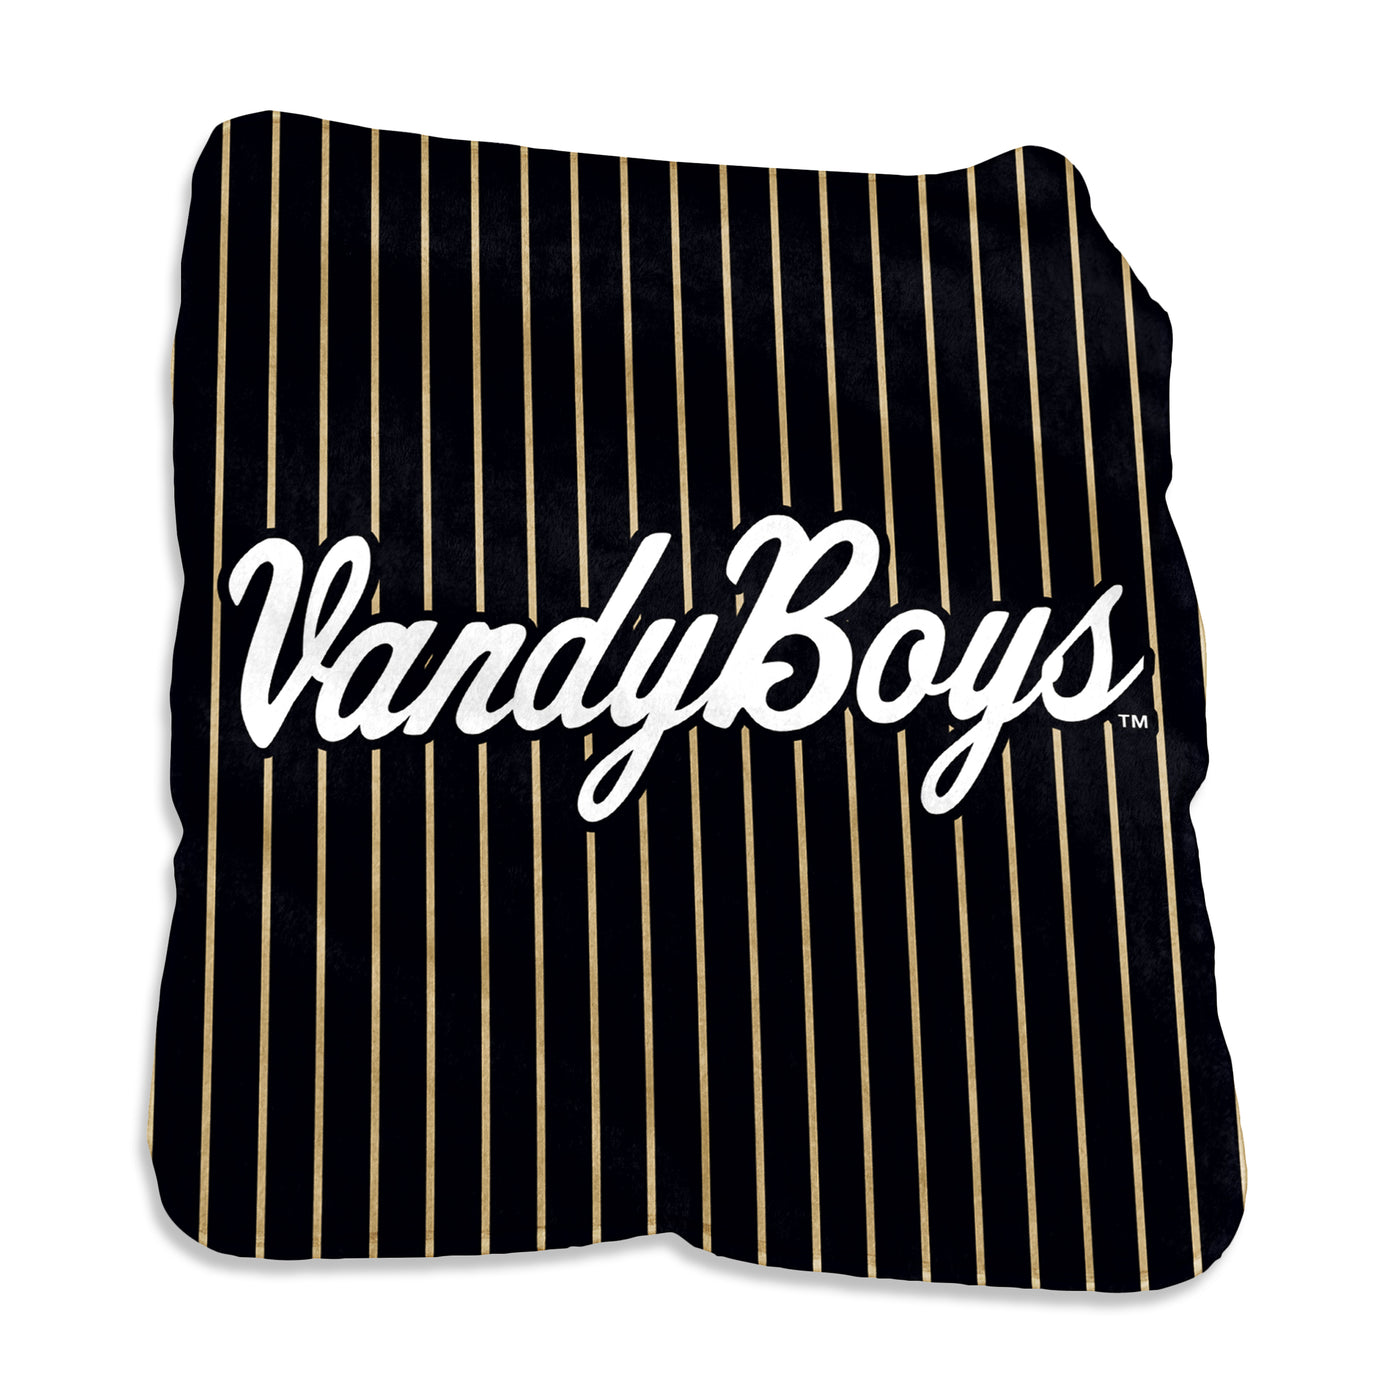 Vanderbilt VandyBoys Baseball Silk Throw